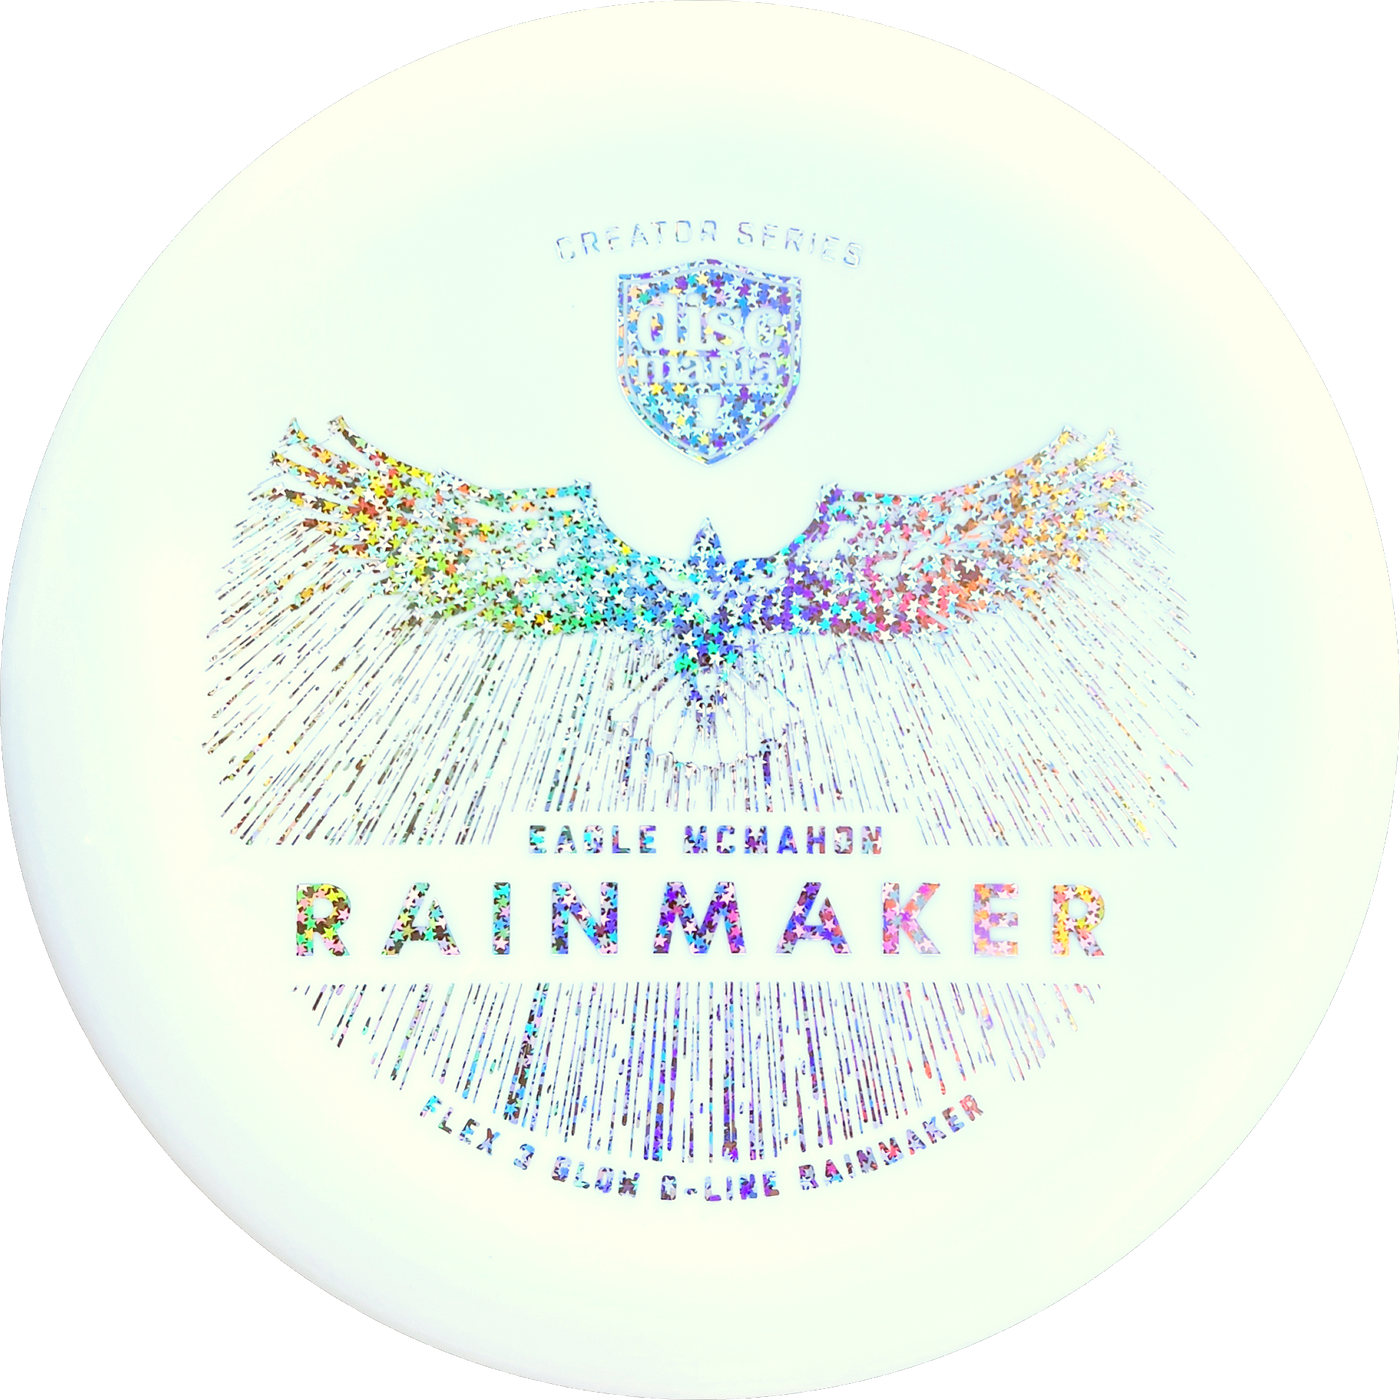 Discmania Rainmaker